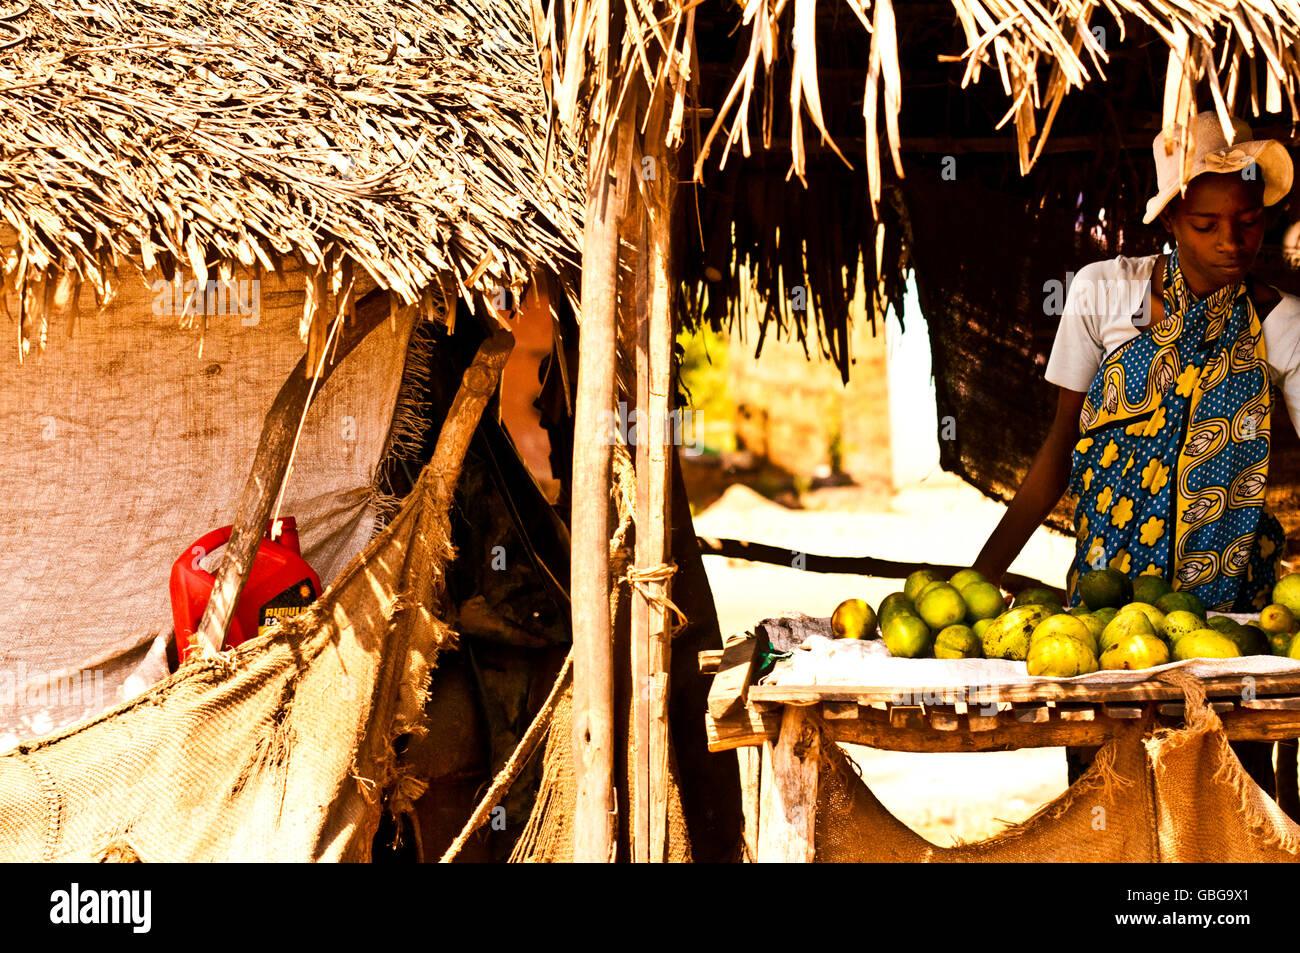 MASAI MARA, KENYA. DECEMBER 18, 2011: Kenyan woman selling fruit at her stall in a market in Mombassa, Kenya. Stock Photo